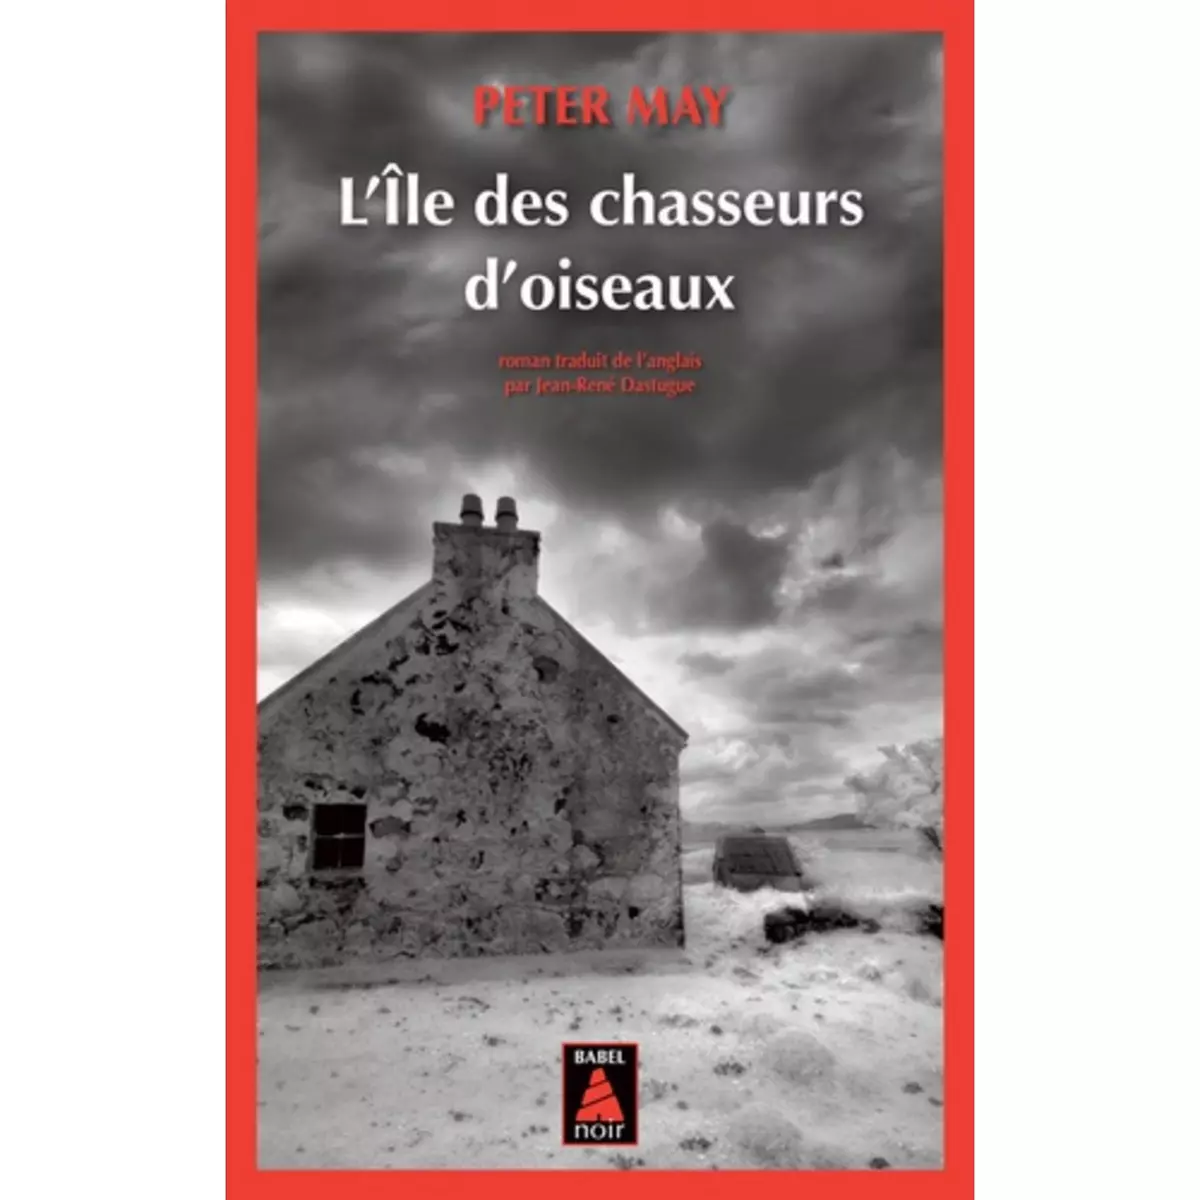  L'ILE DES CHASSEURS D'OISEAUX, May Peter